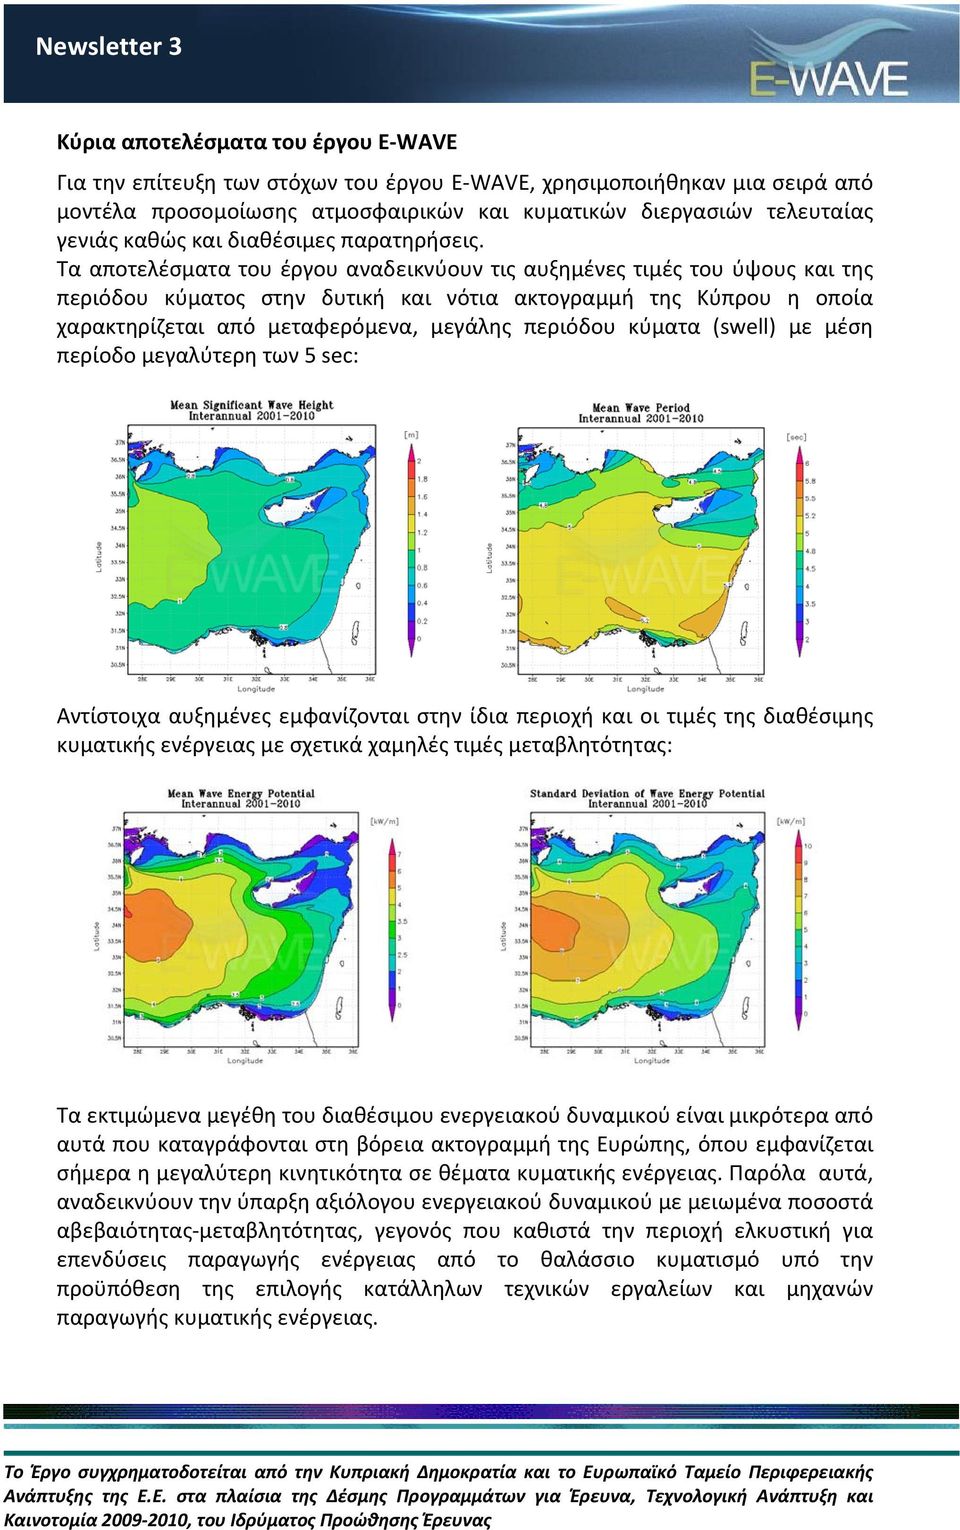 Τα αποτελέσματα του έργου αναδεικνύουν τις αυξημένες τιμές του ύψους και της περιόδου κύματος στην δυτική και νότια ακτογραμμή της Κύπρου η οποία χαρακτηρίζεται από μεταφερόμενα, μεγάλης περιόδου